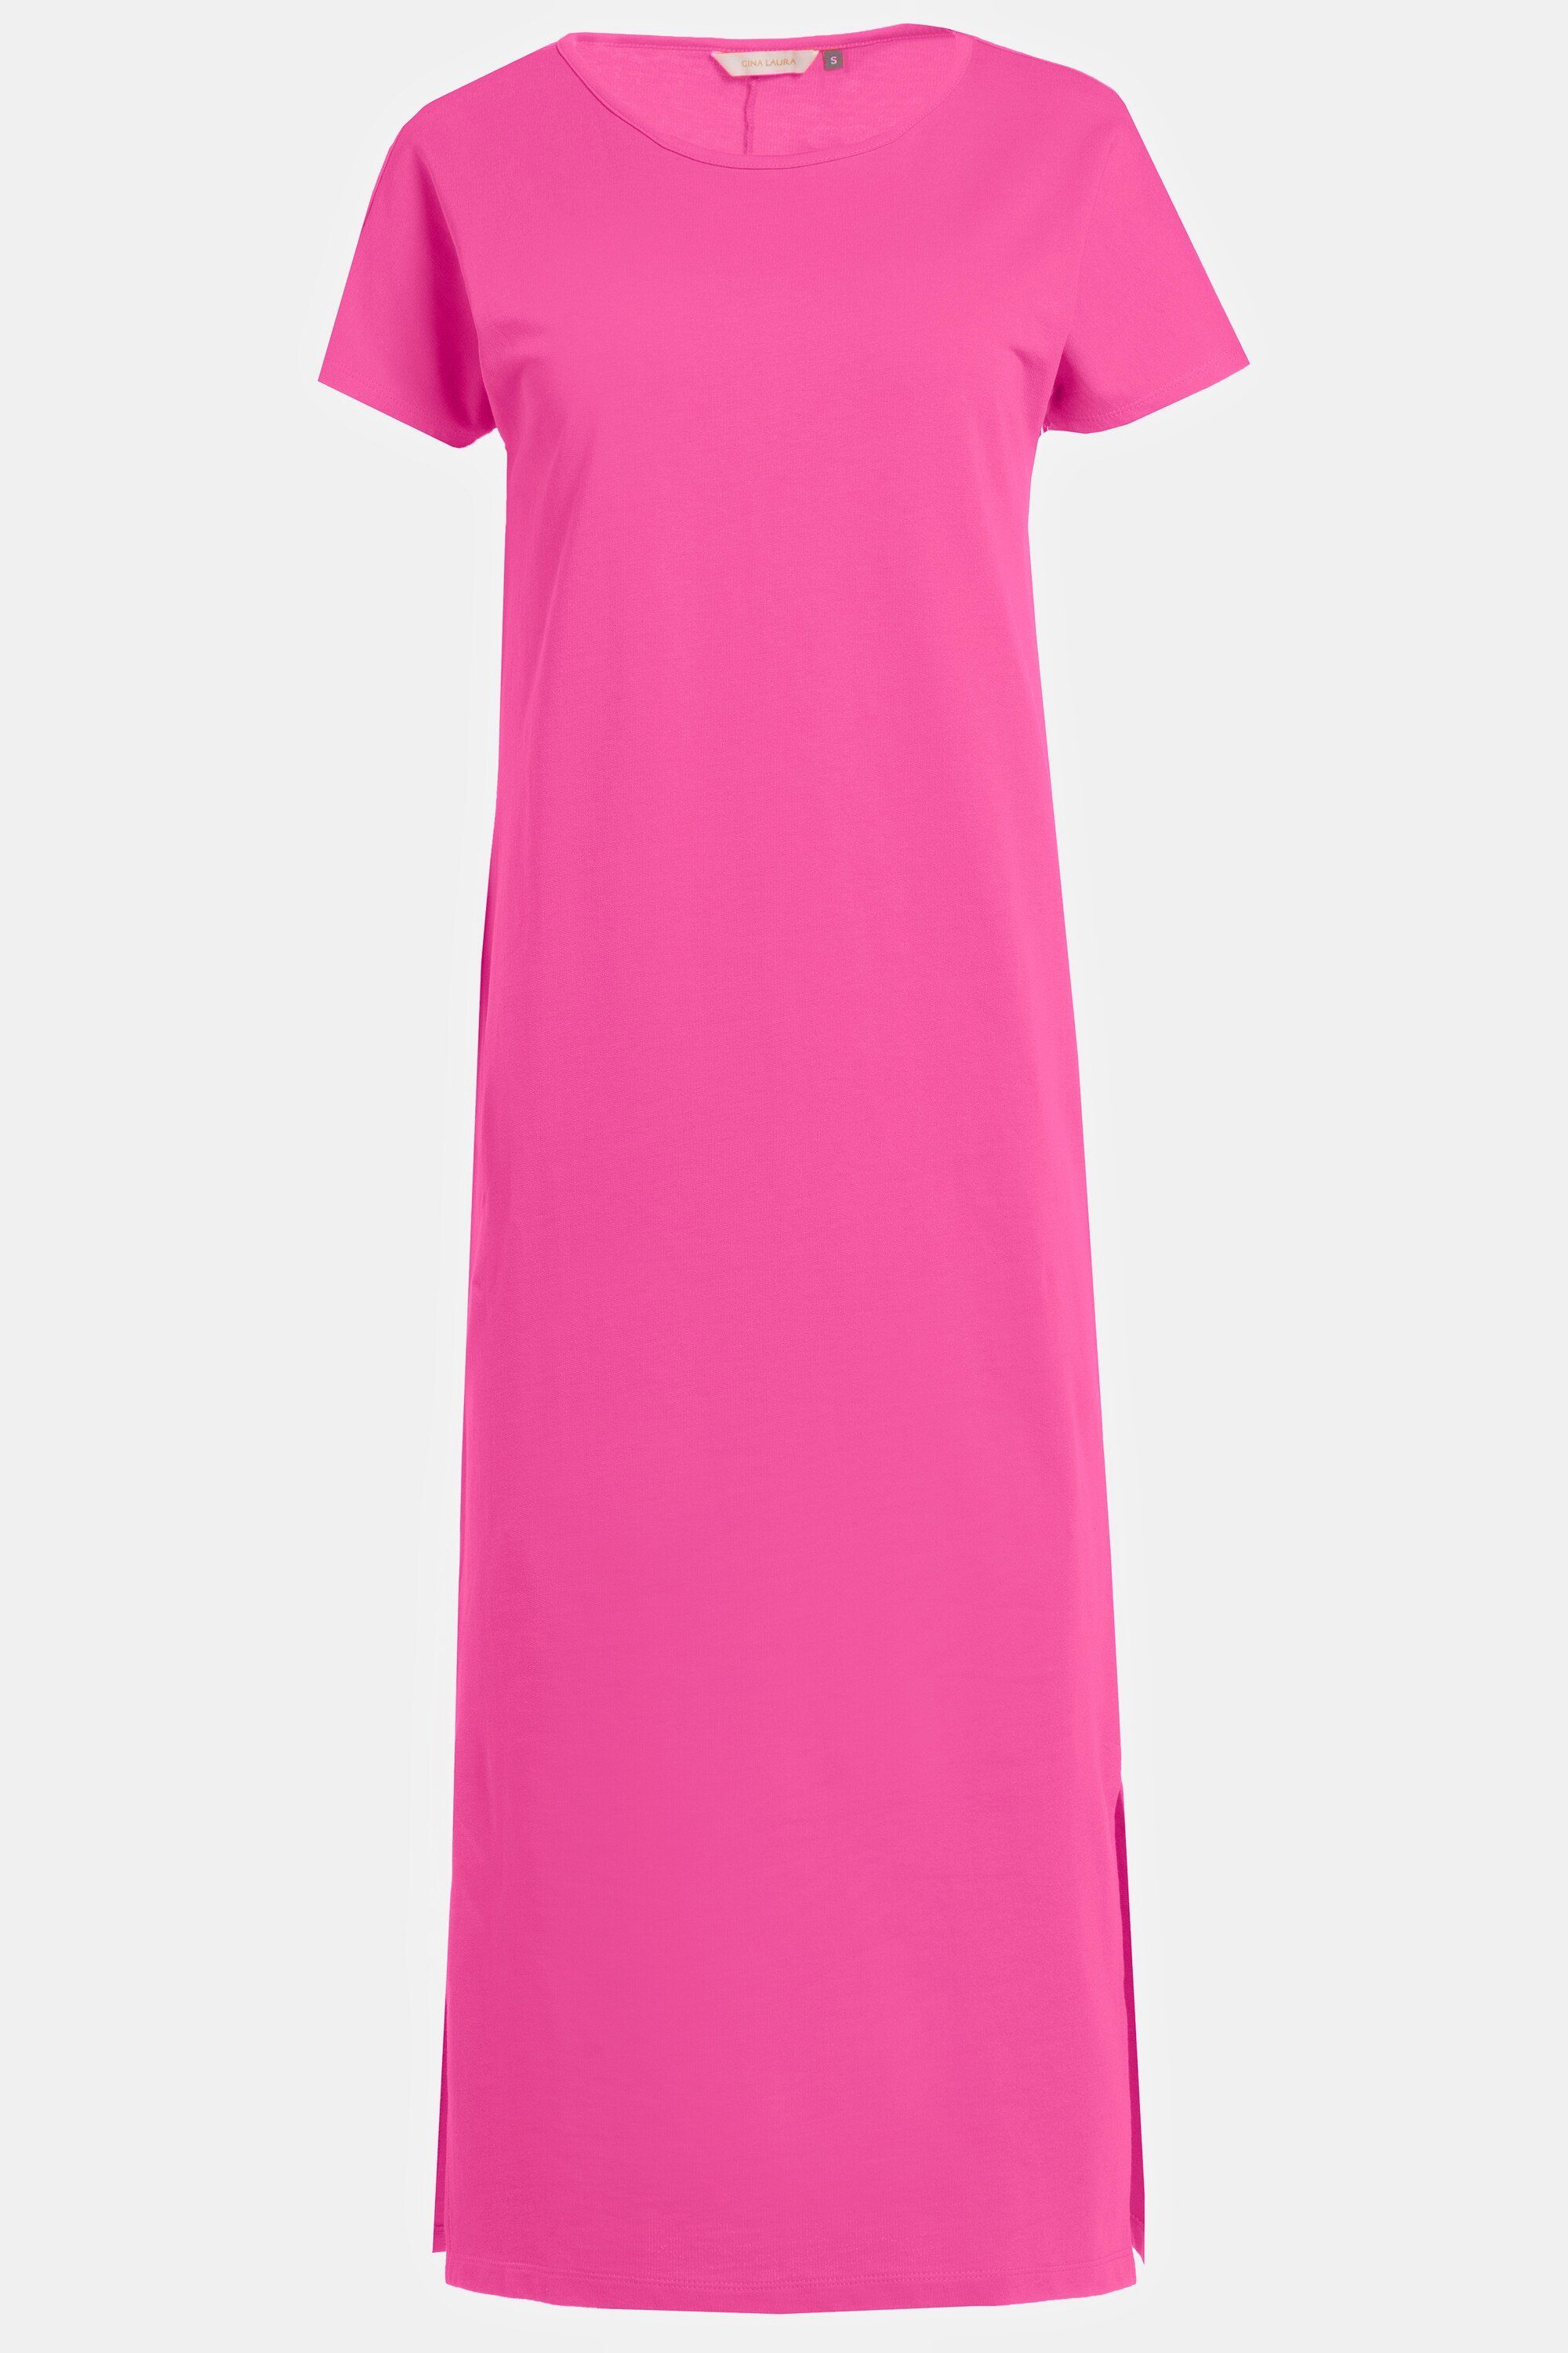 Laura Kleid Rundhals Gina ärmellos pink Seitenschlitze Jersey Jerseykleid